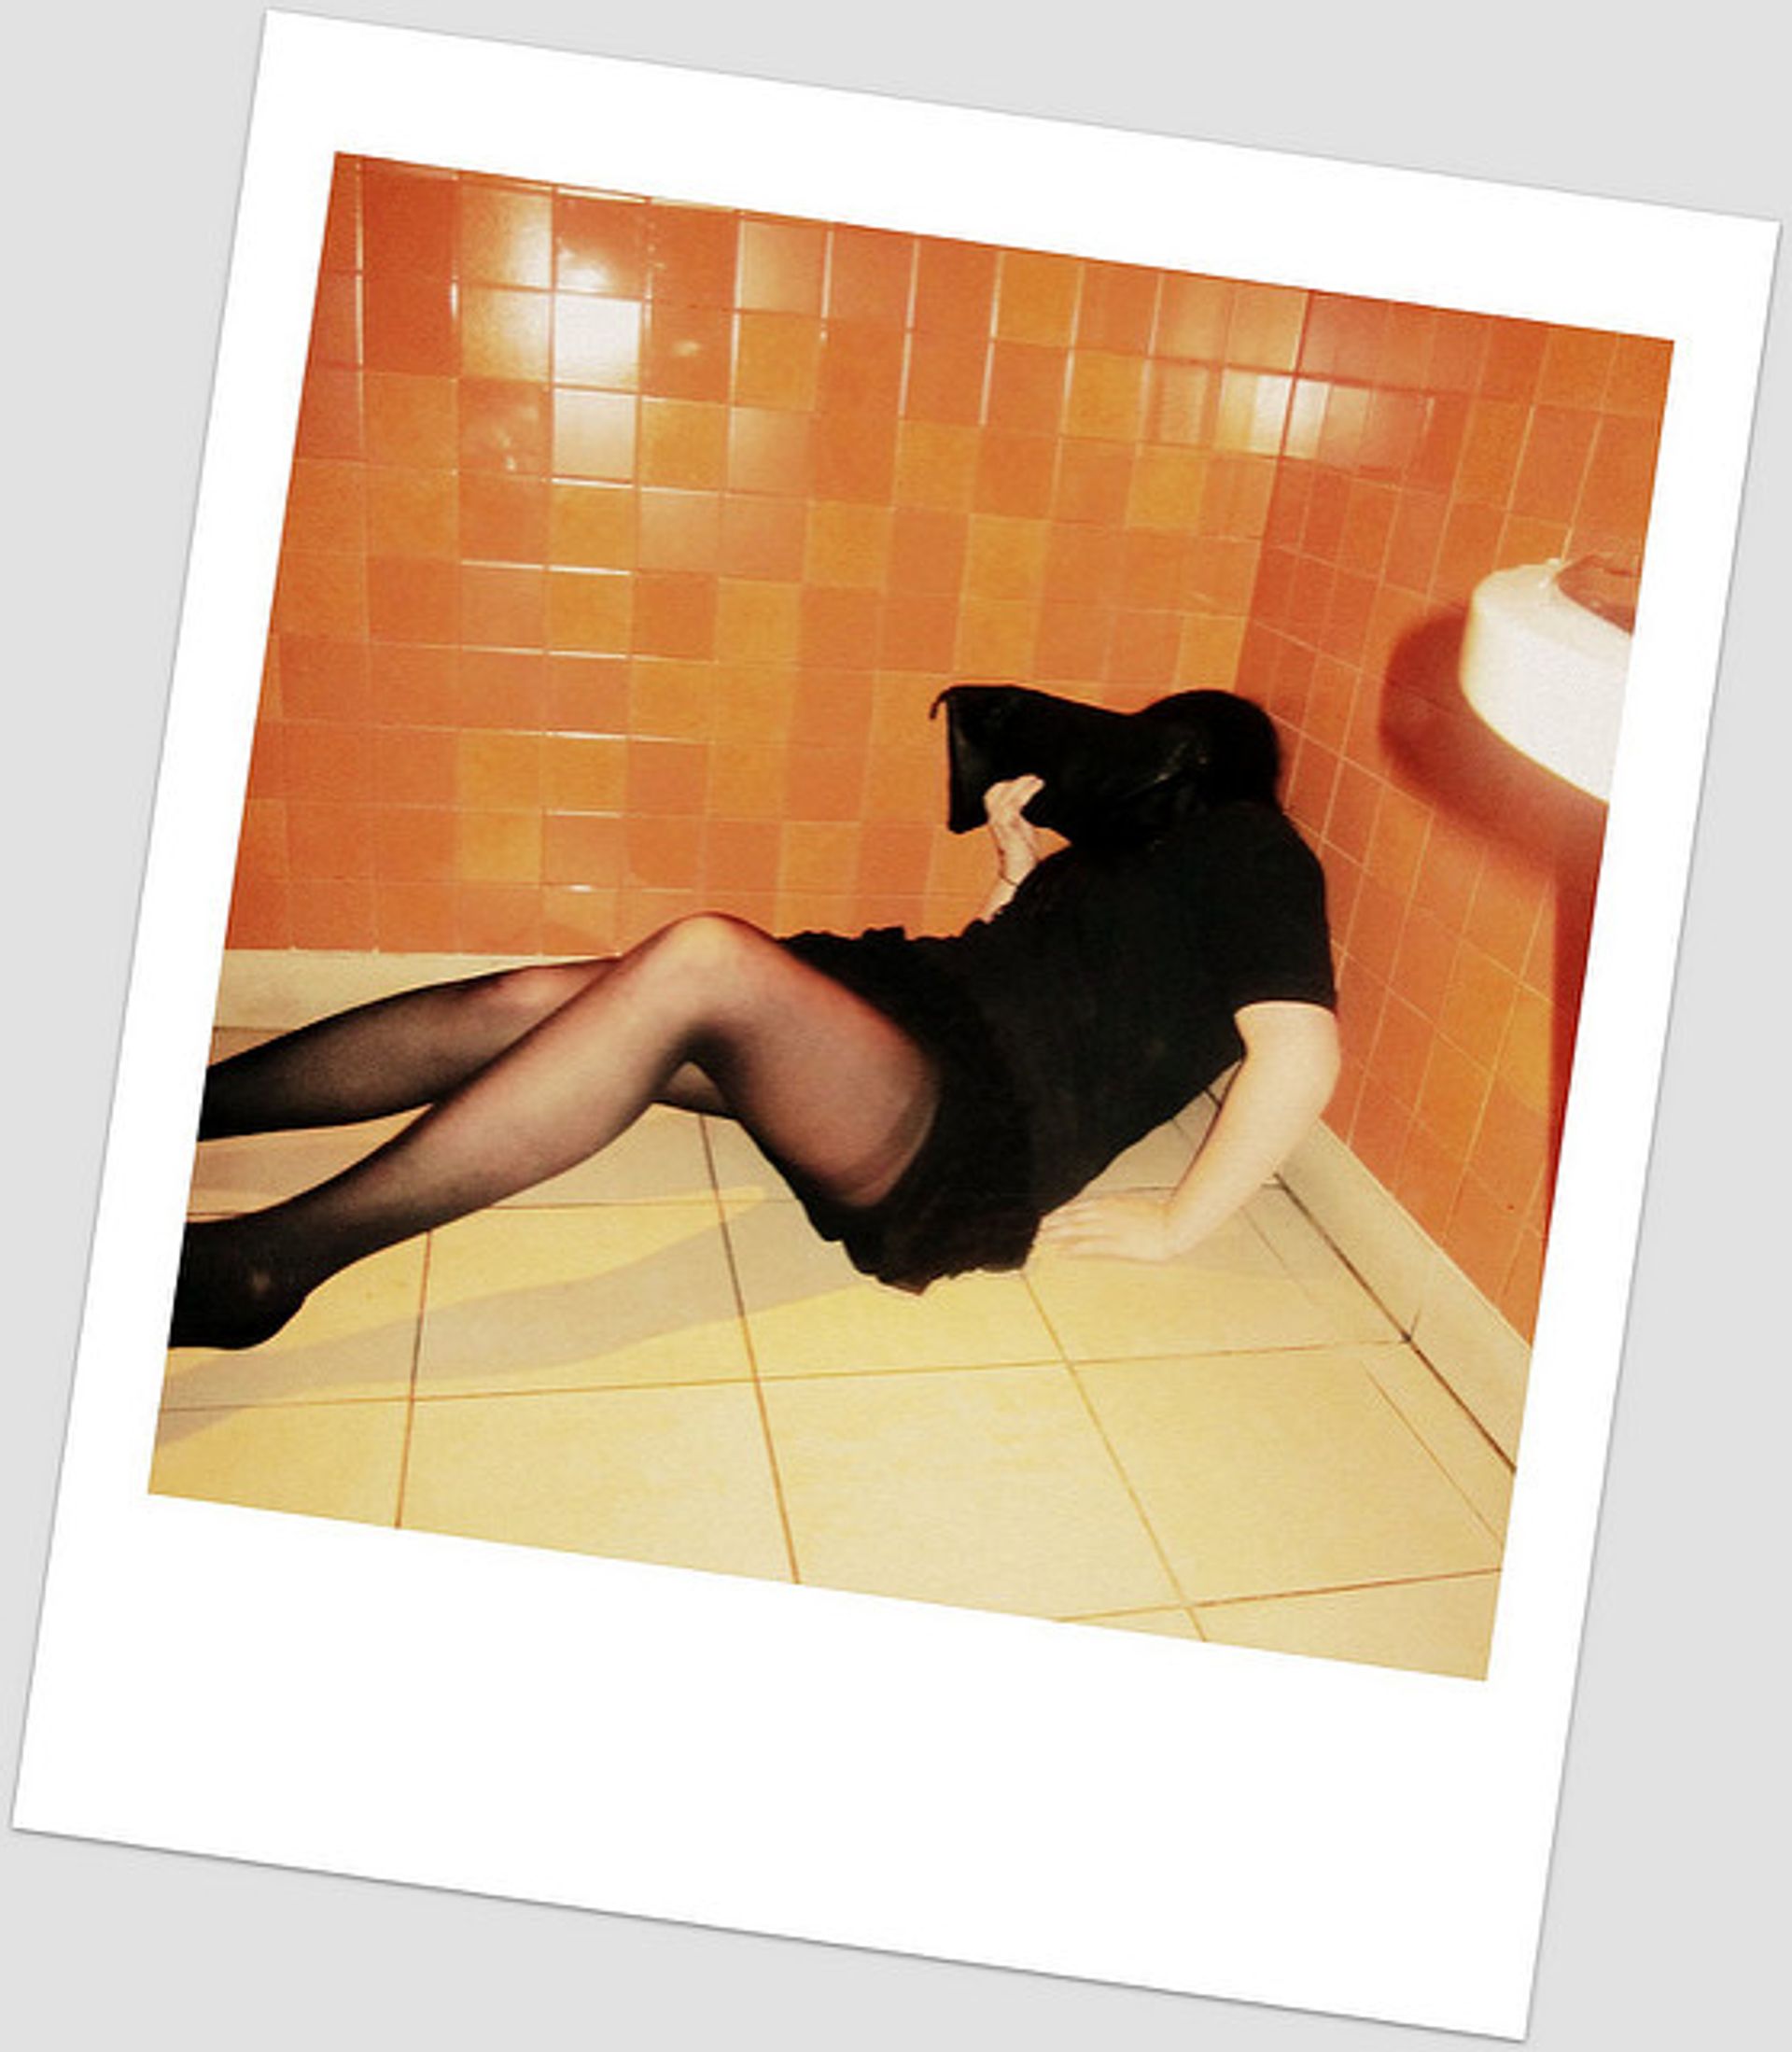 Stijlblad Esquire neuk dronken vrouwen als ze bewusteloos zijn was een grapje - Joop foto